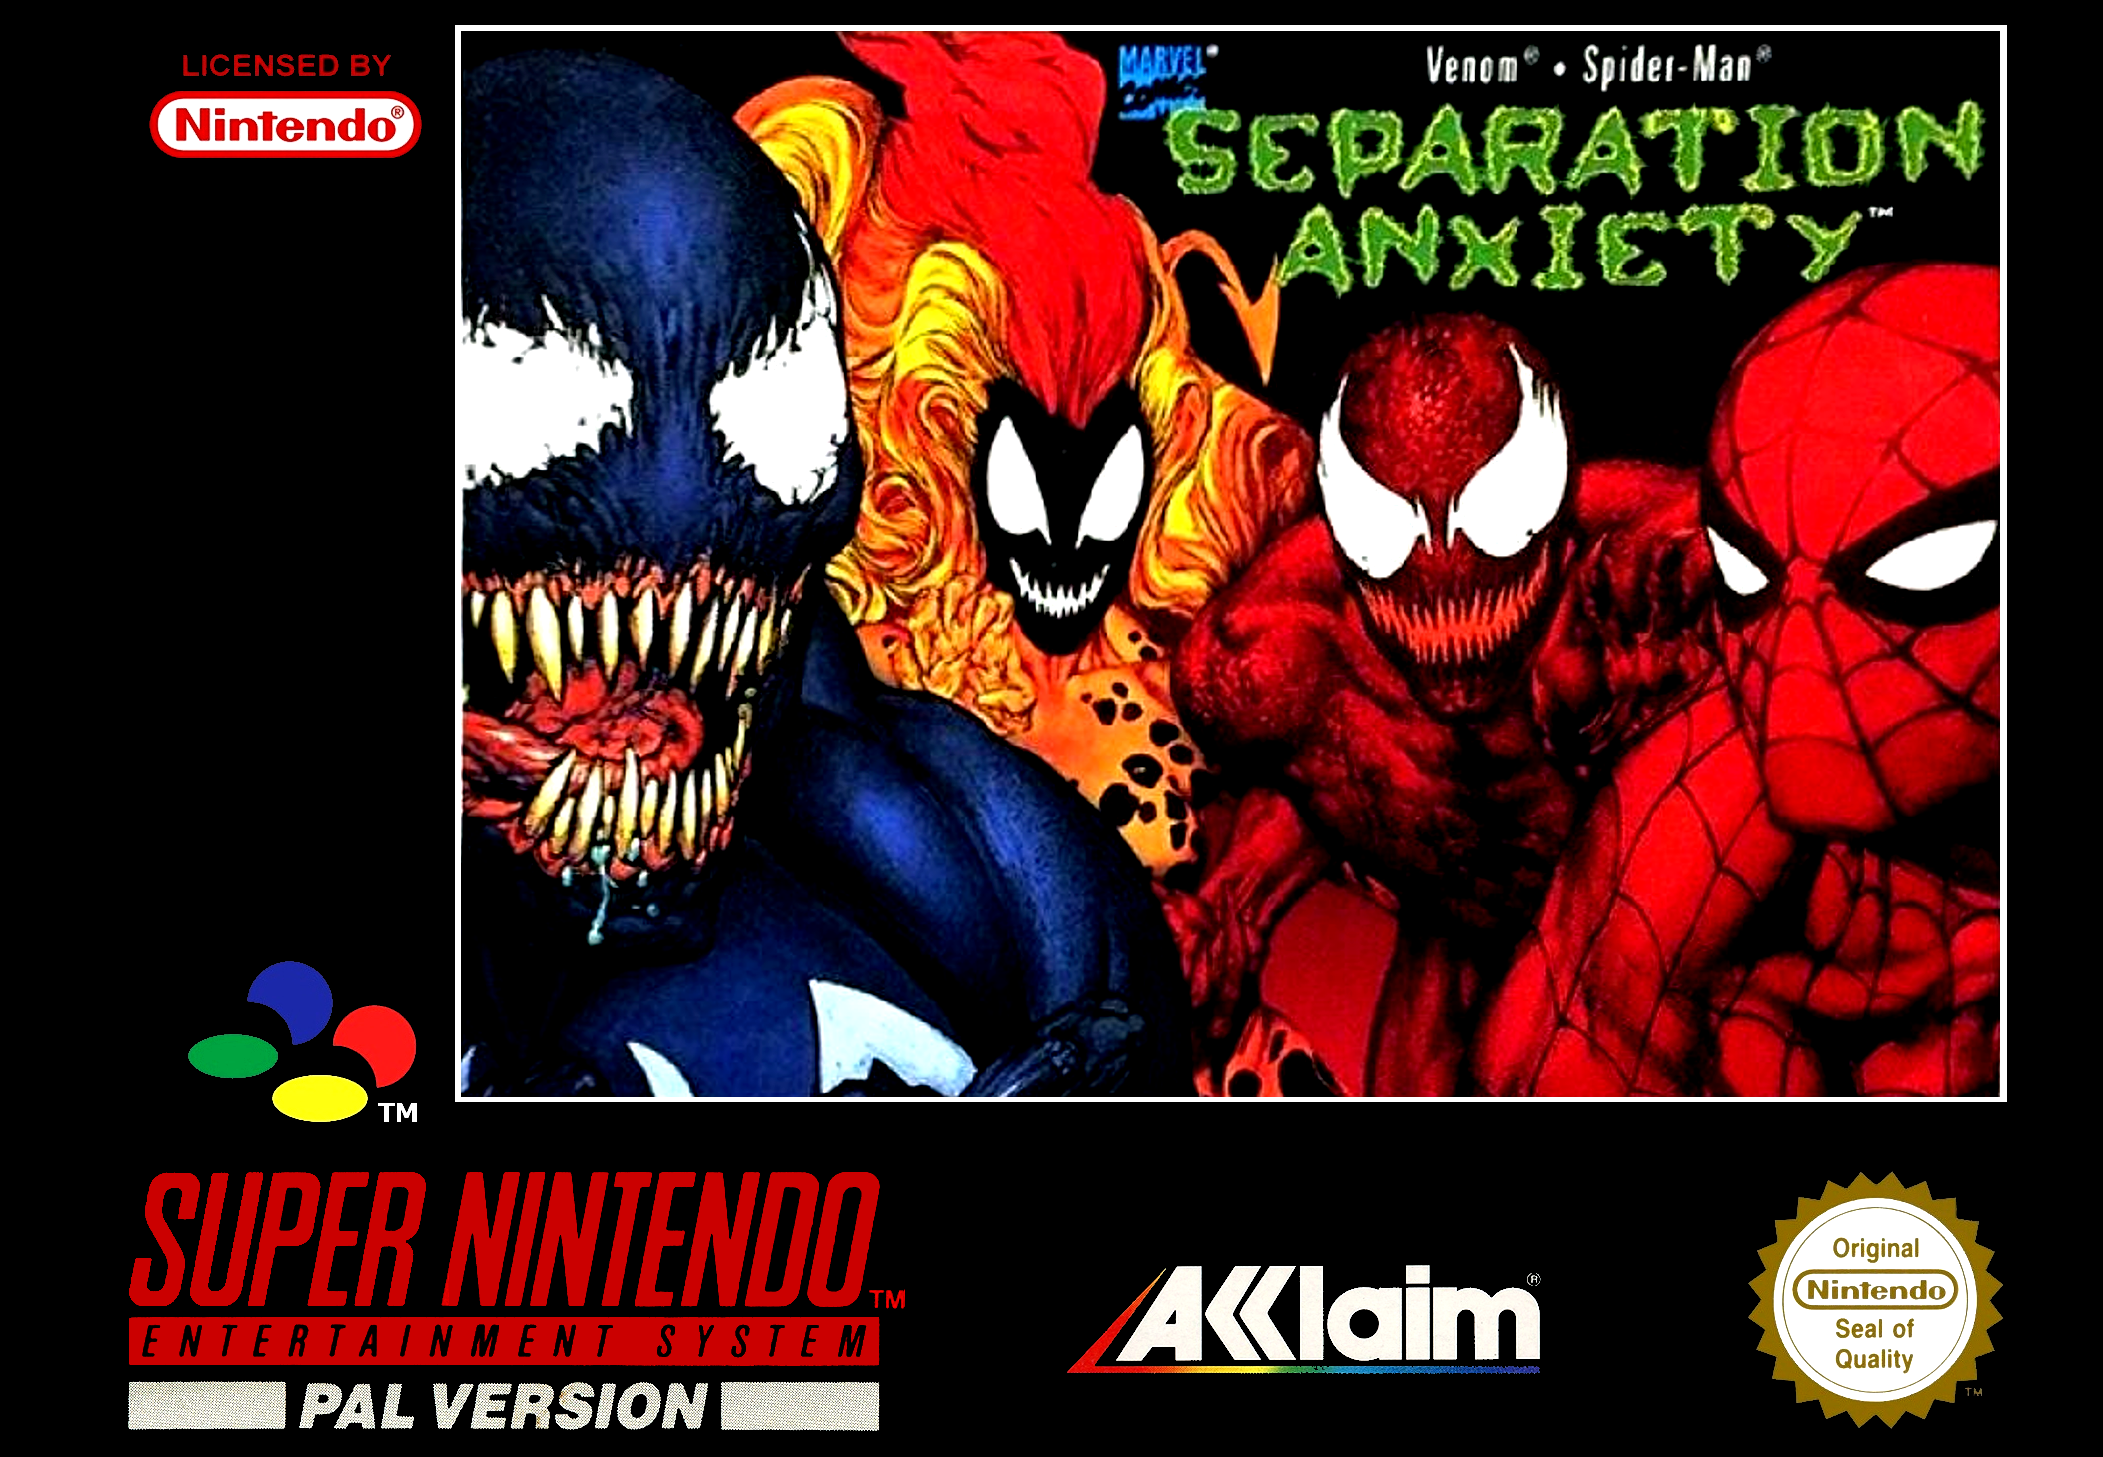 Venom / Spider-Man: Separation Anxiety [SNES]